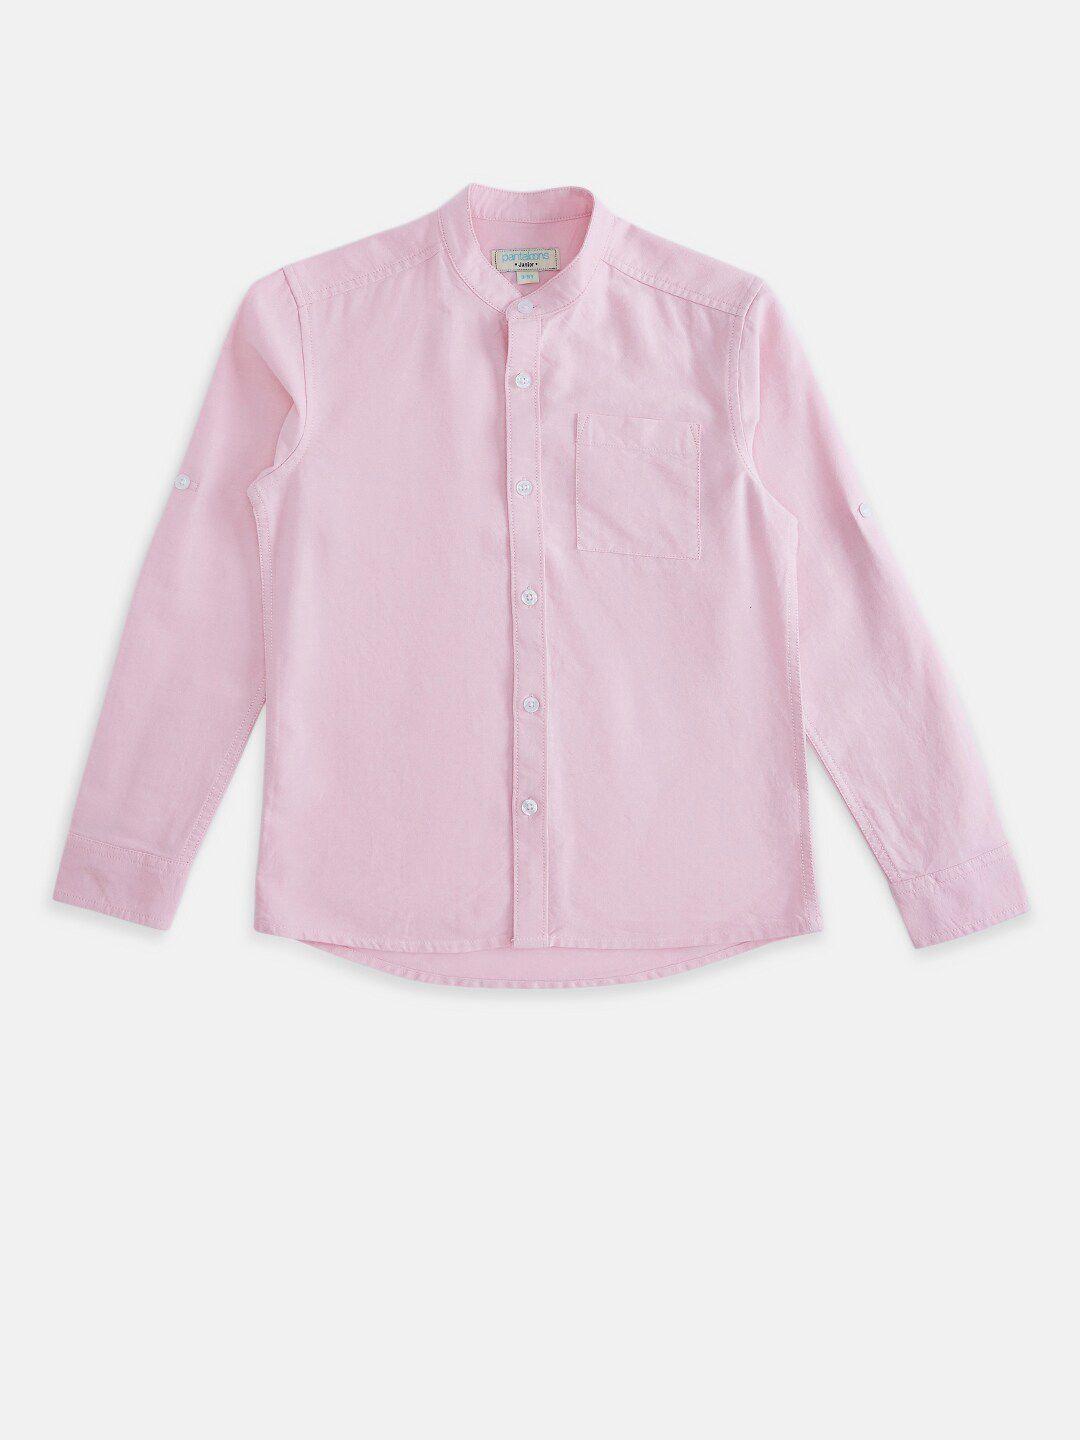 pantaloons junior boys pink solid casual shirt